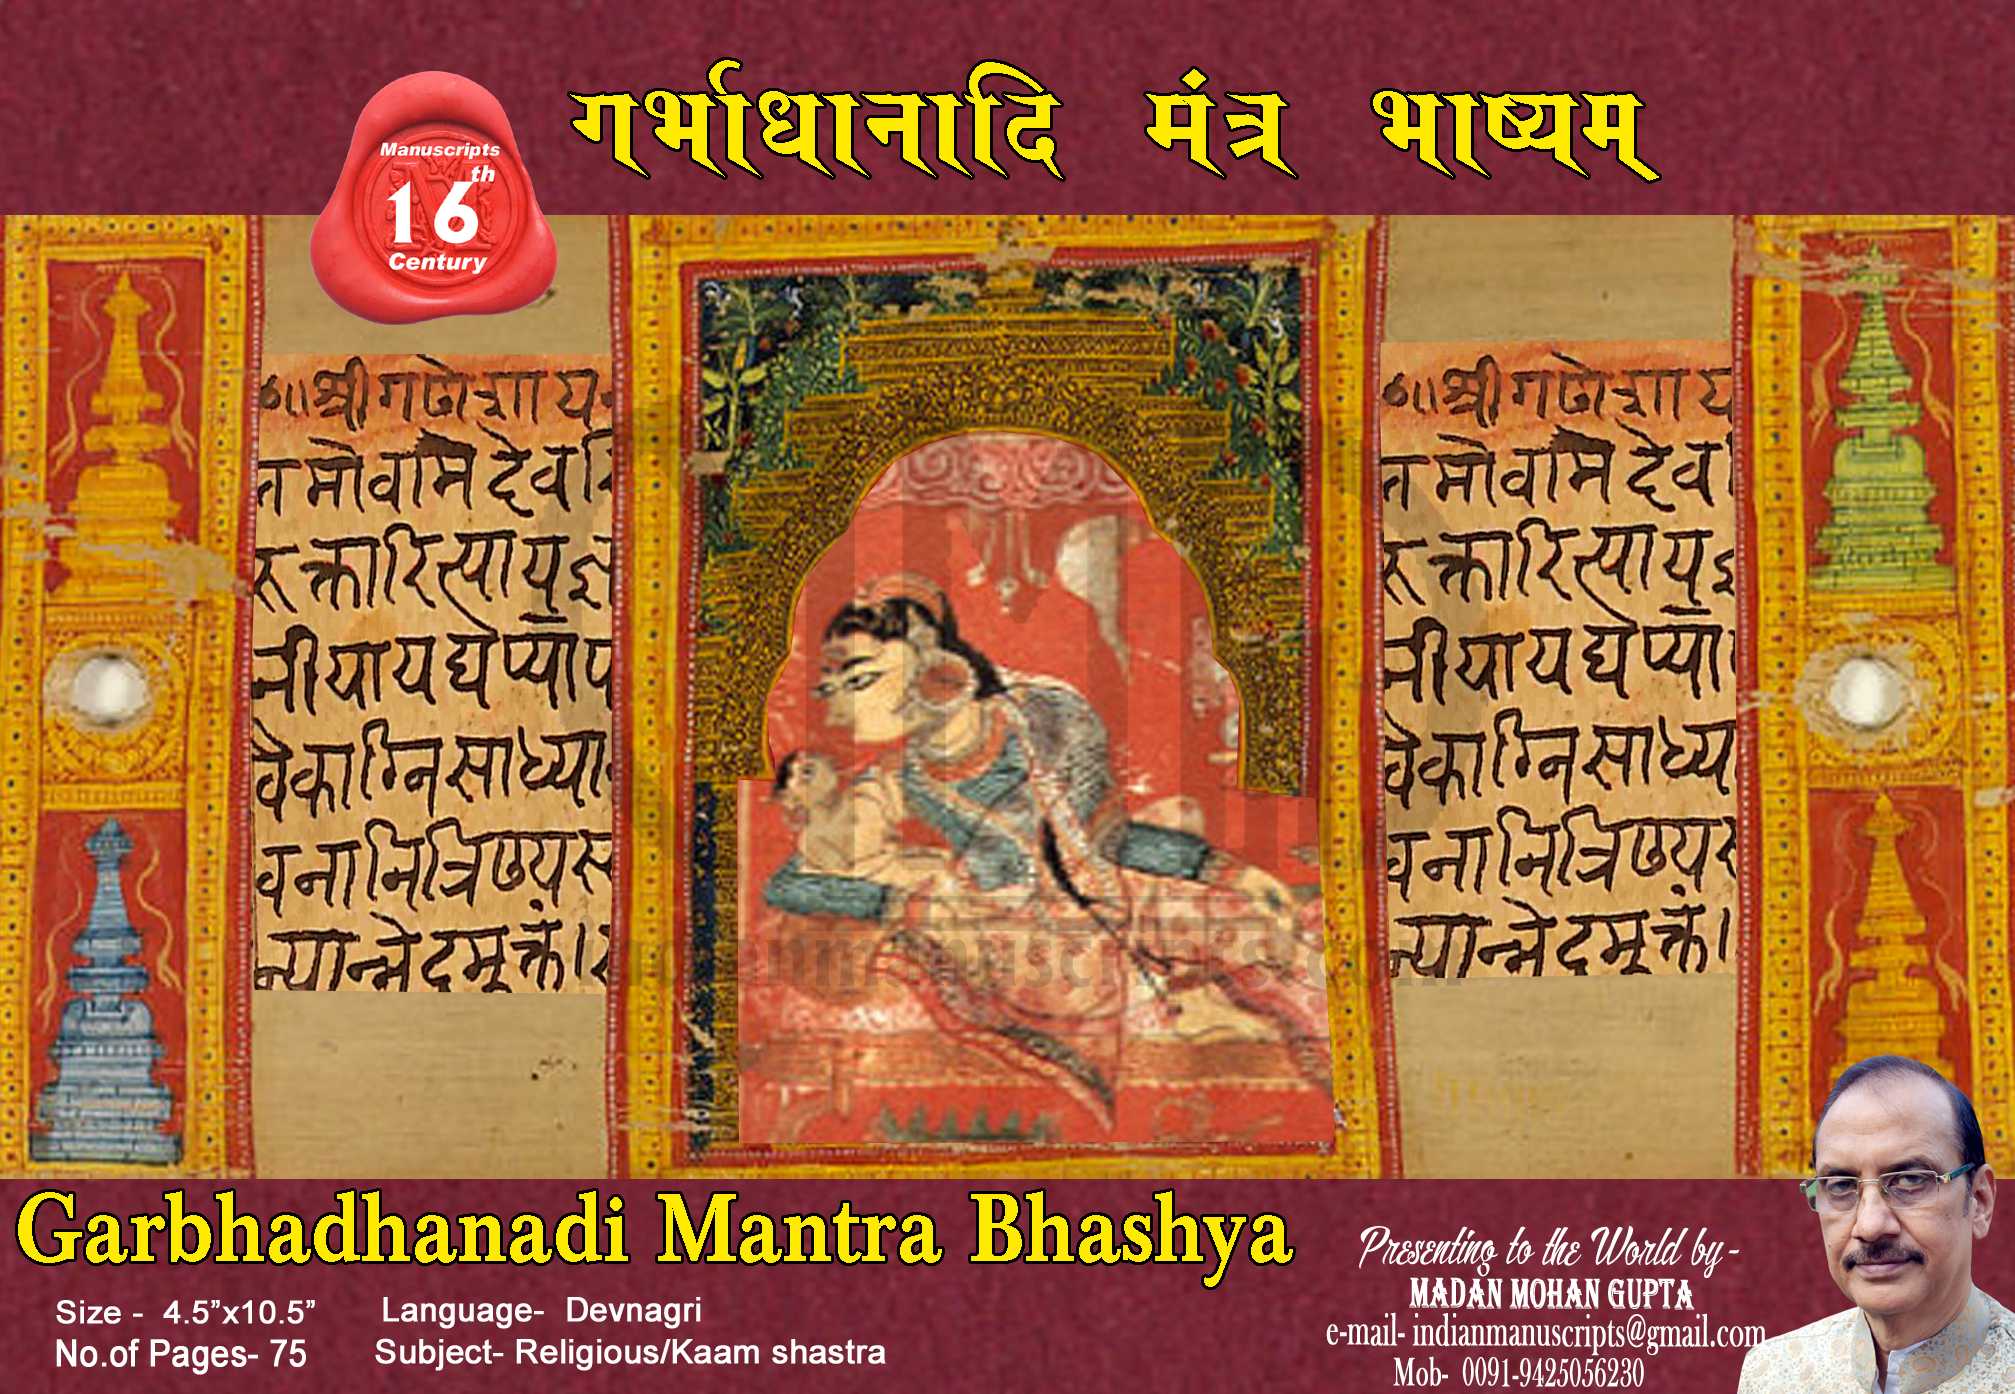 Garbhadhanadi Mantra Bhashya